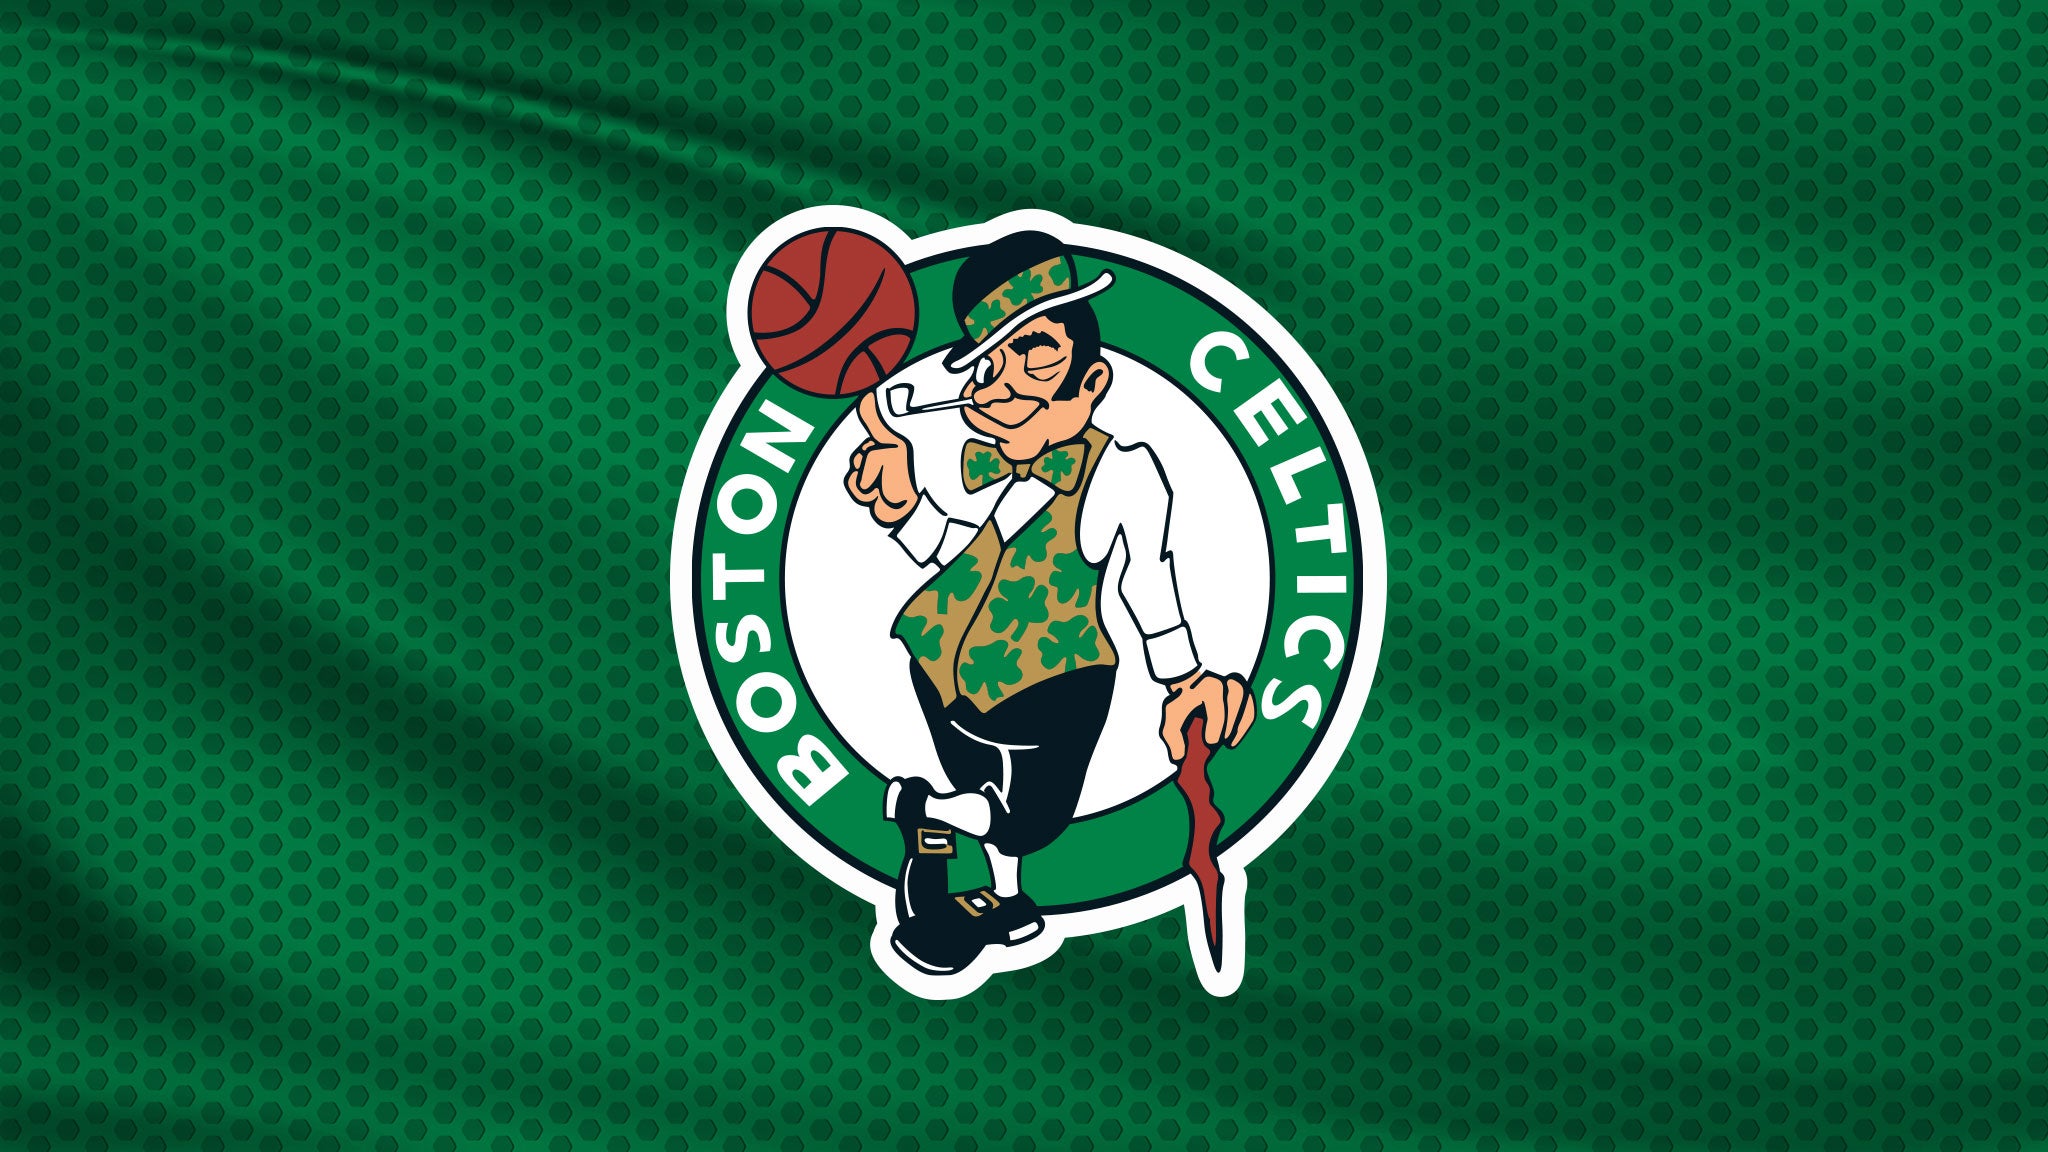 NBA Finals: TBD at Celtics Rd 4 Hm Gm 2